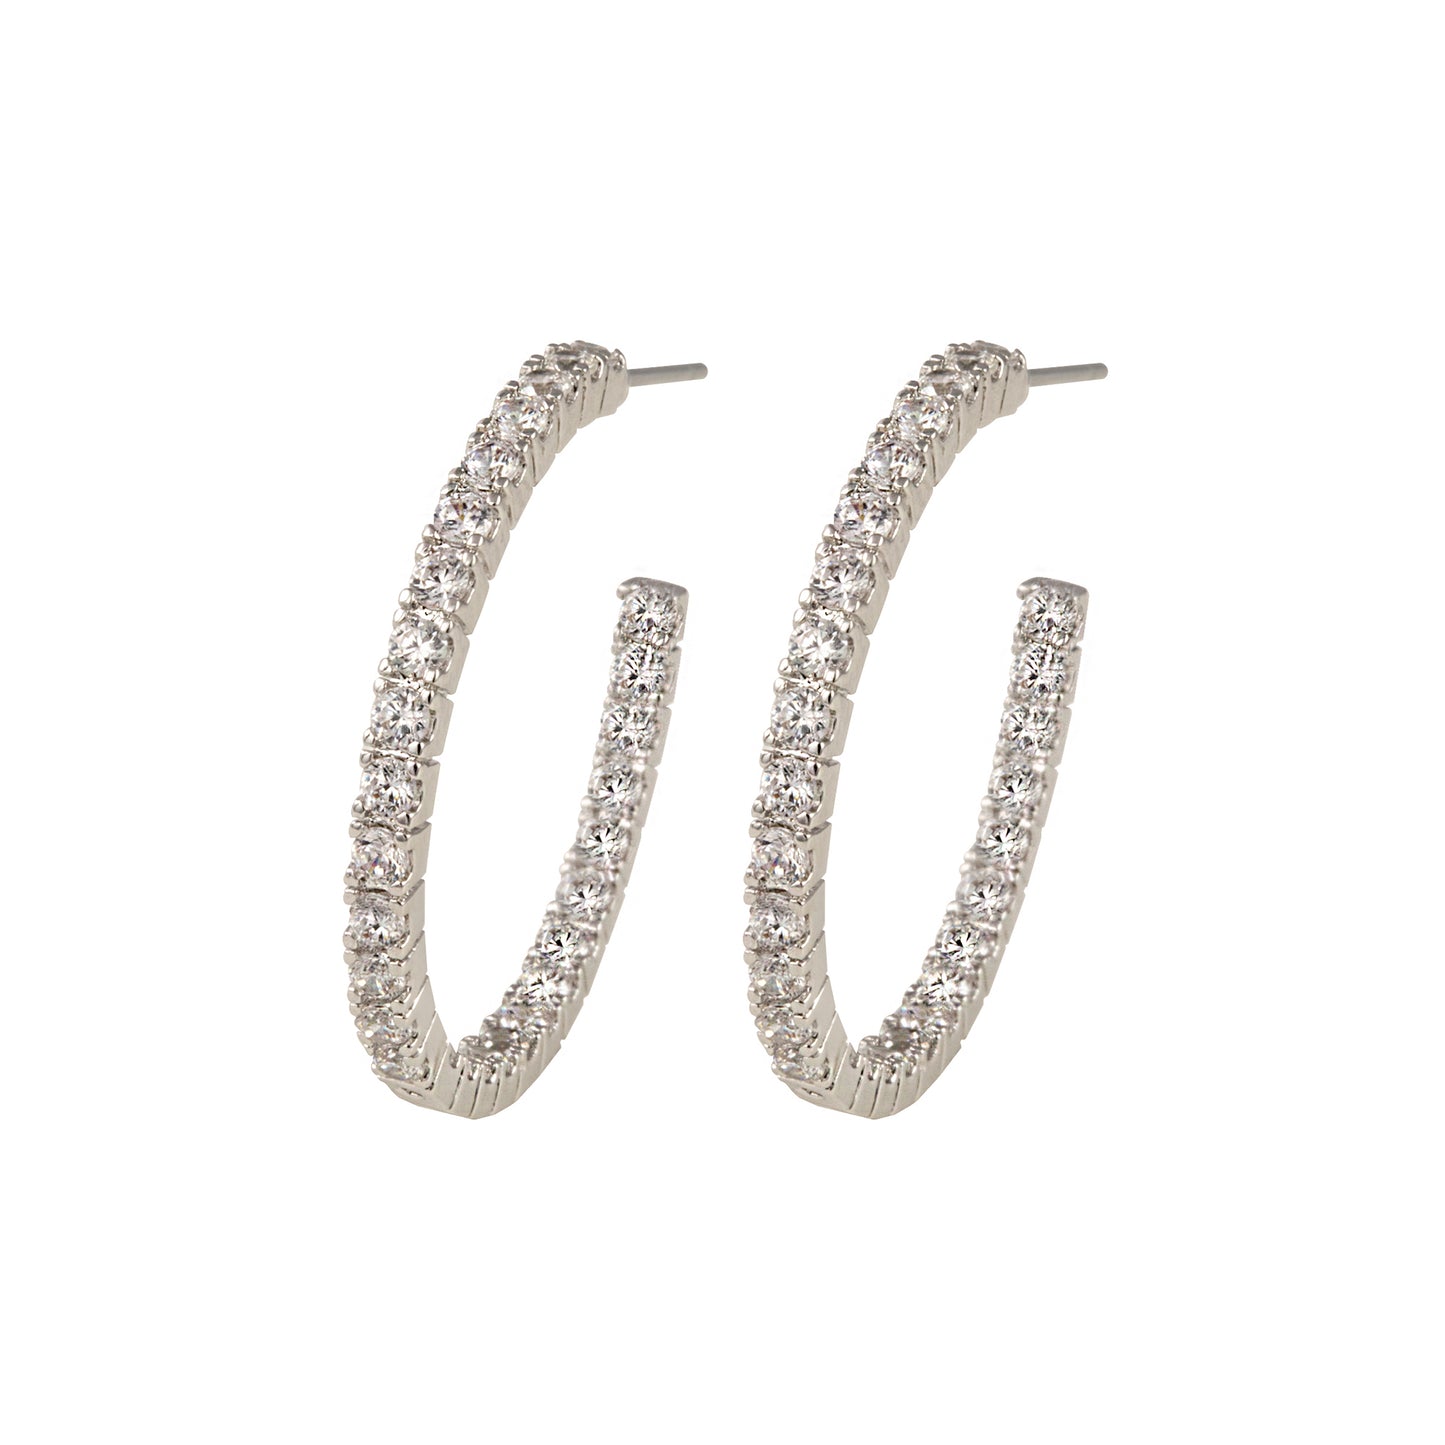 Bella 30mm Pave CZ Diamond Hoop Earrings, Silver - Zahra Jewelry